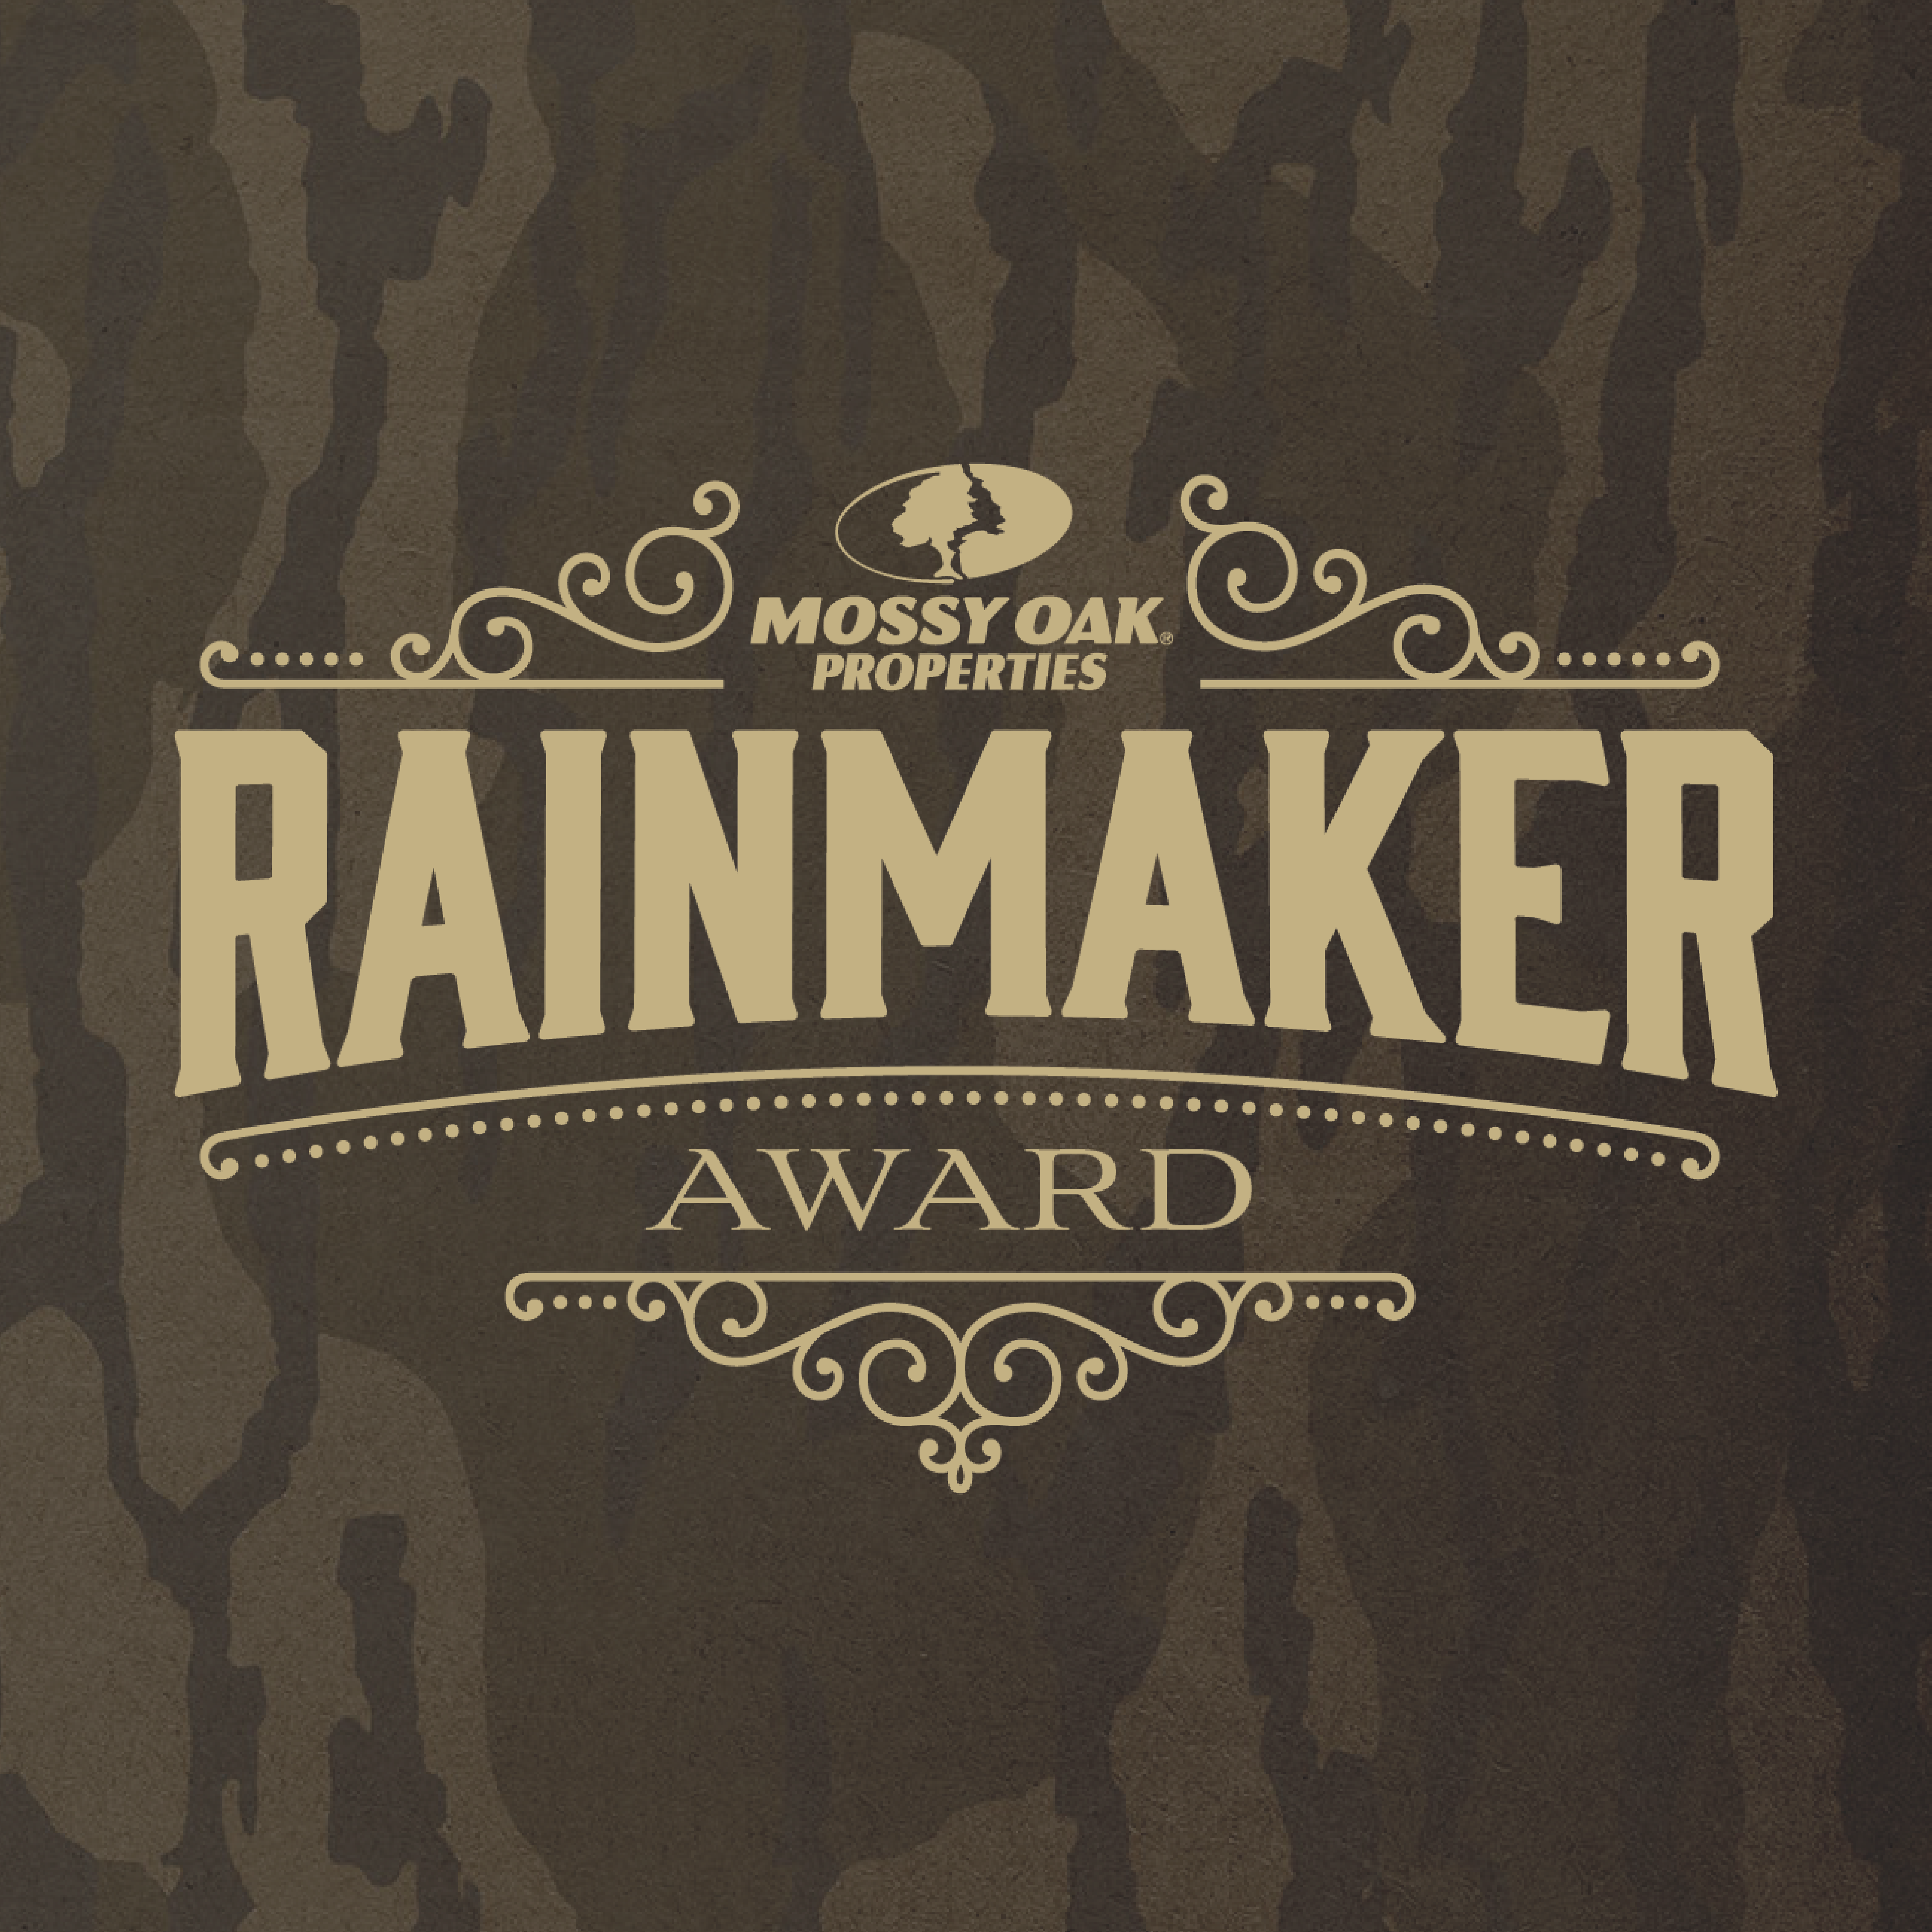 rainmaker award